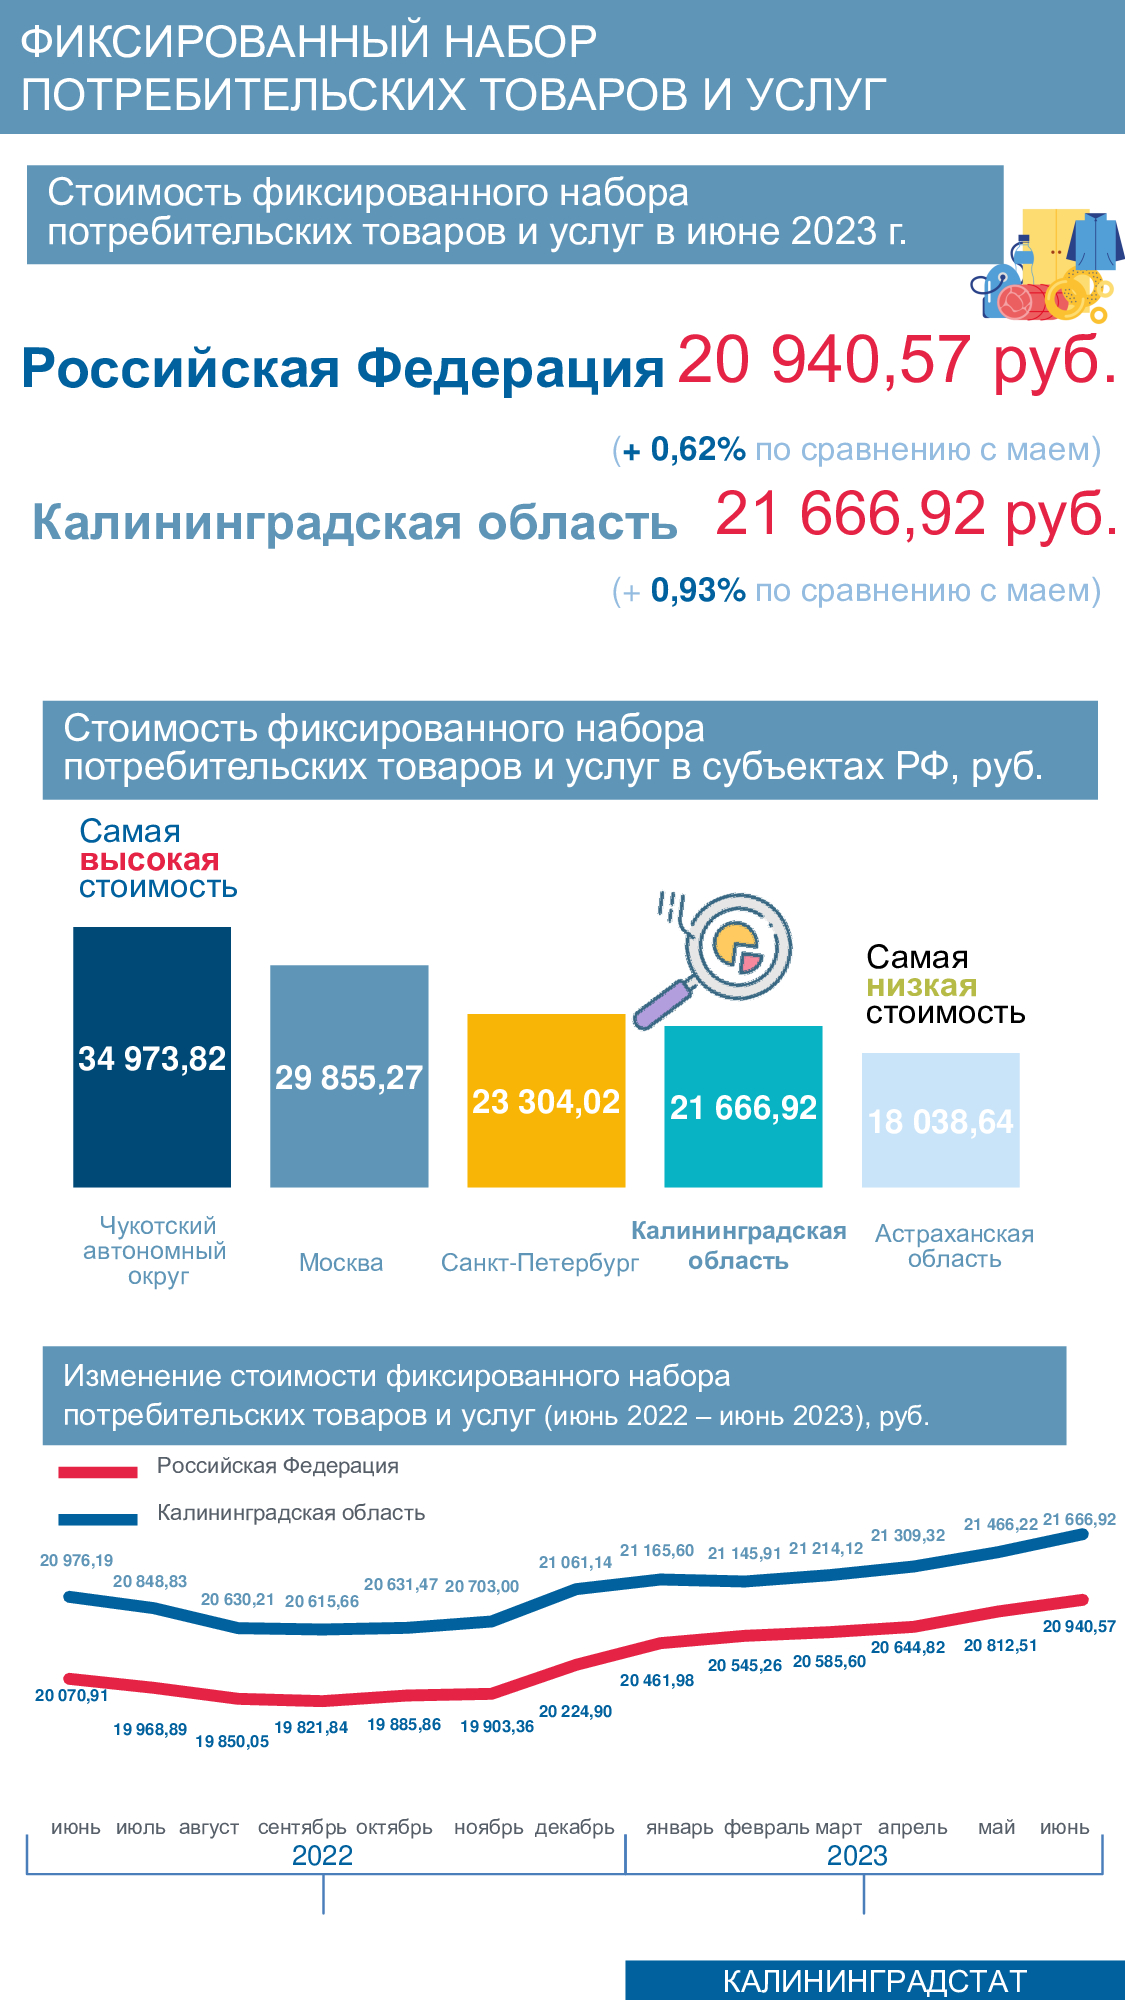 Калининградская область - на 17-м месте в России по стоимости фиксированного набора потребтоваров и услуг